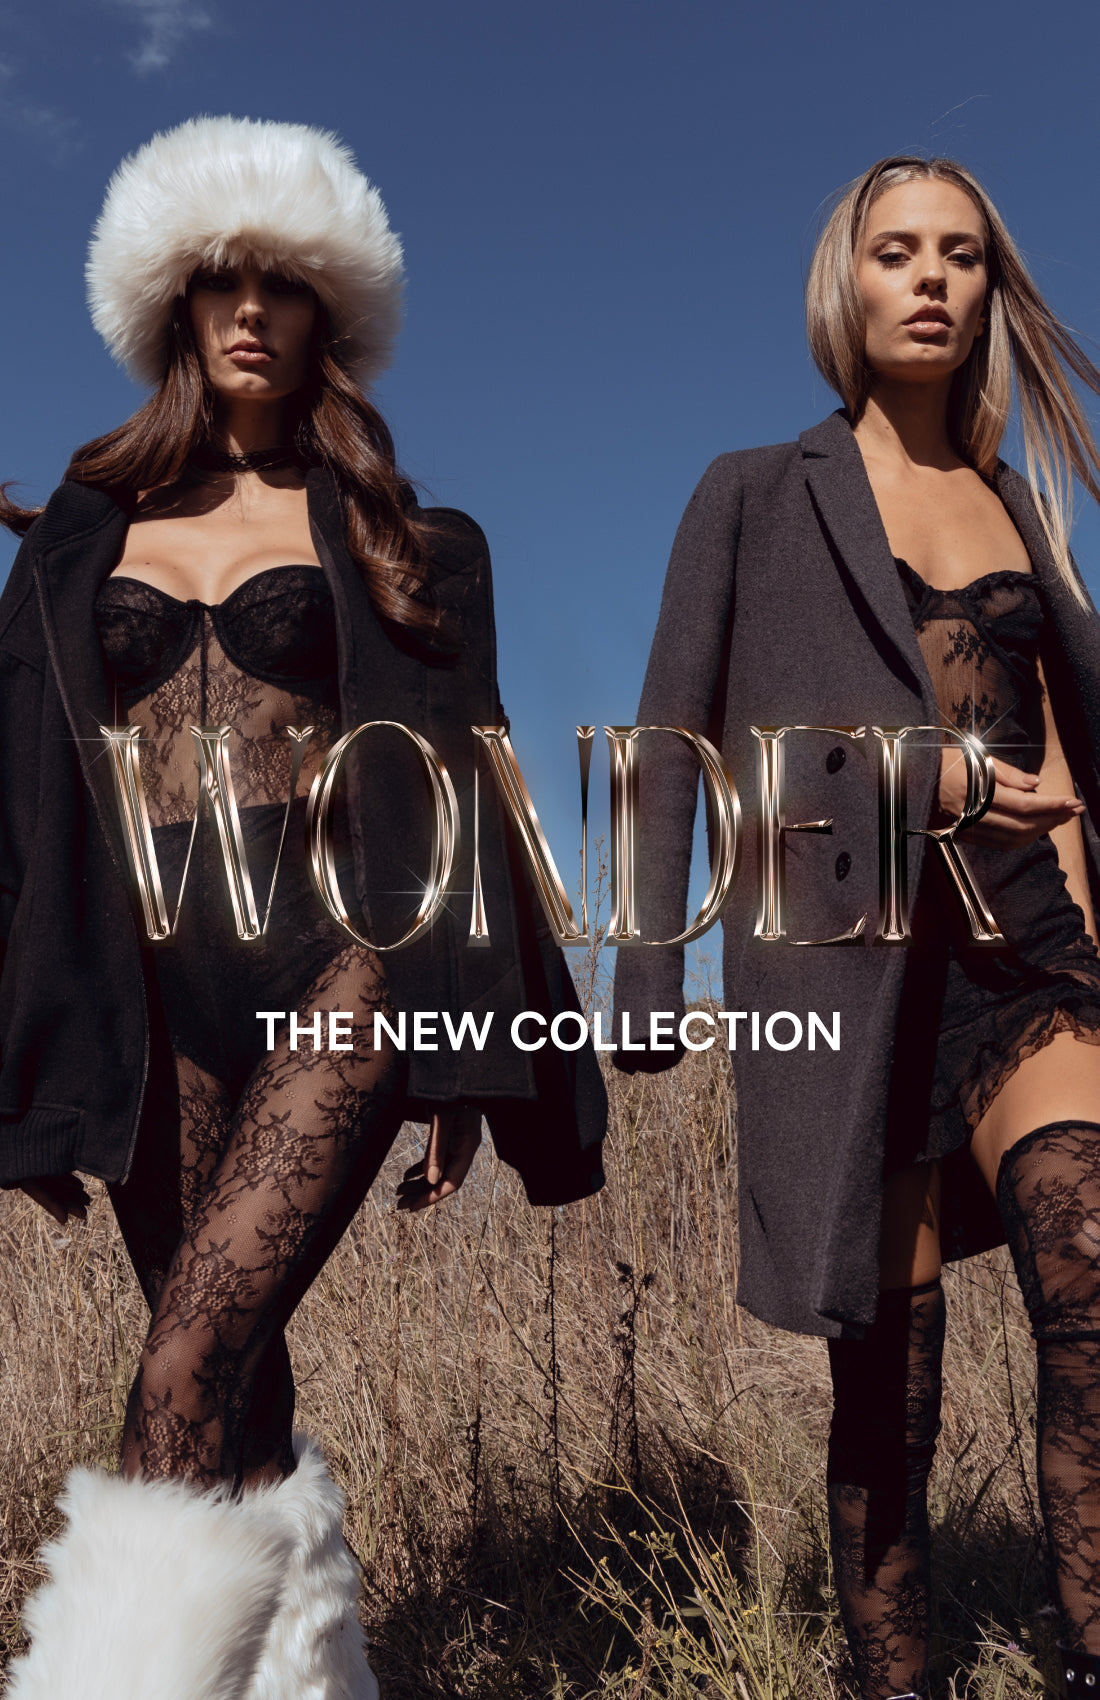 Dos modelos posan en un campo con abrigos largos y lencería negra bajo un cielo azul. El texto "WONDER" en letras doradas y "THE NEW COLLECTION" en letras blancas promocionan la nueva colección de DELAOSTIA.